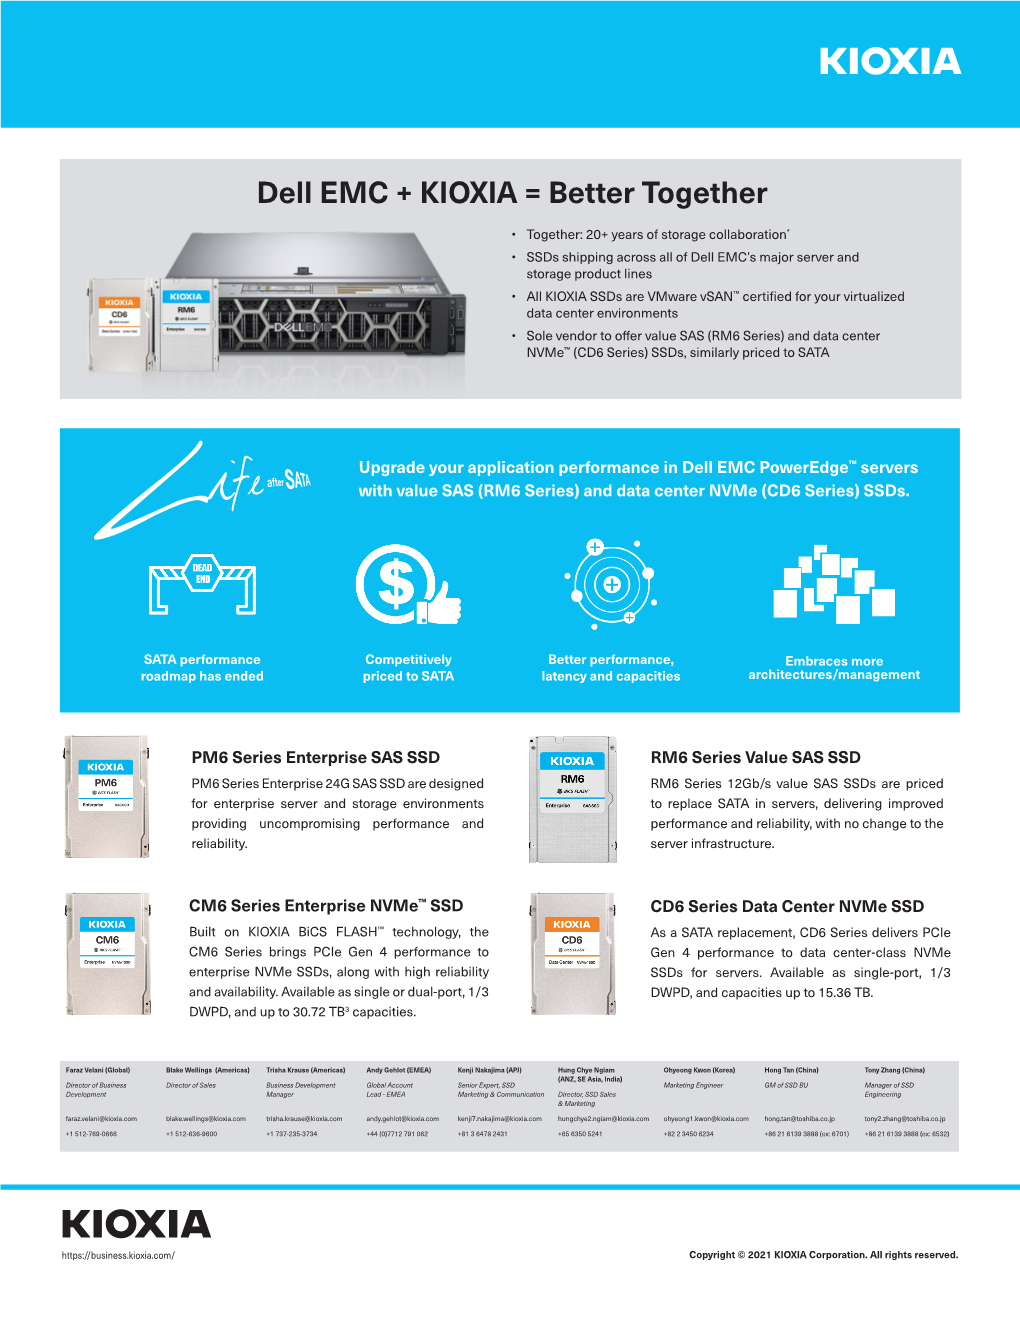 KIOXIA Dell EMC Data Sheet